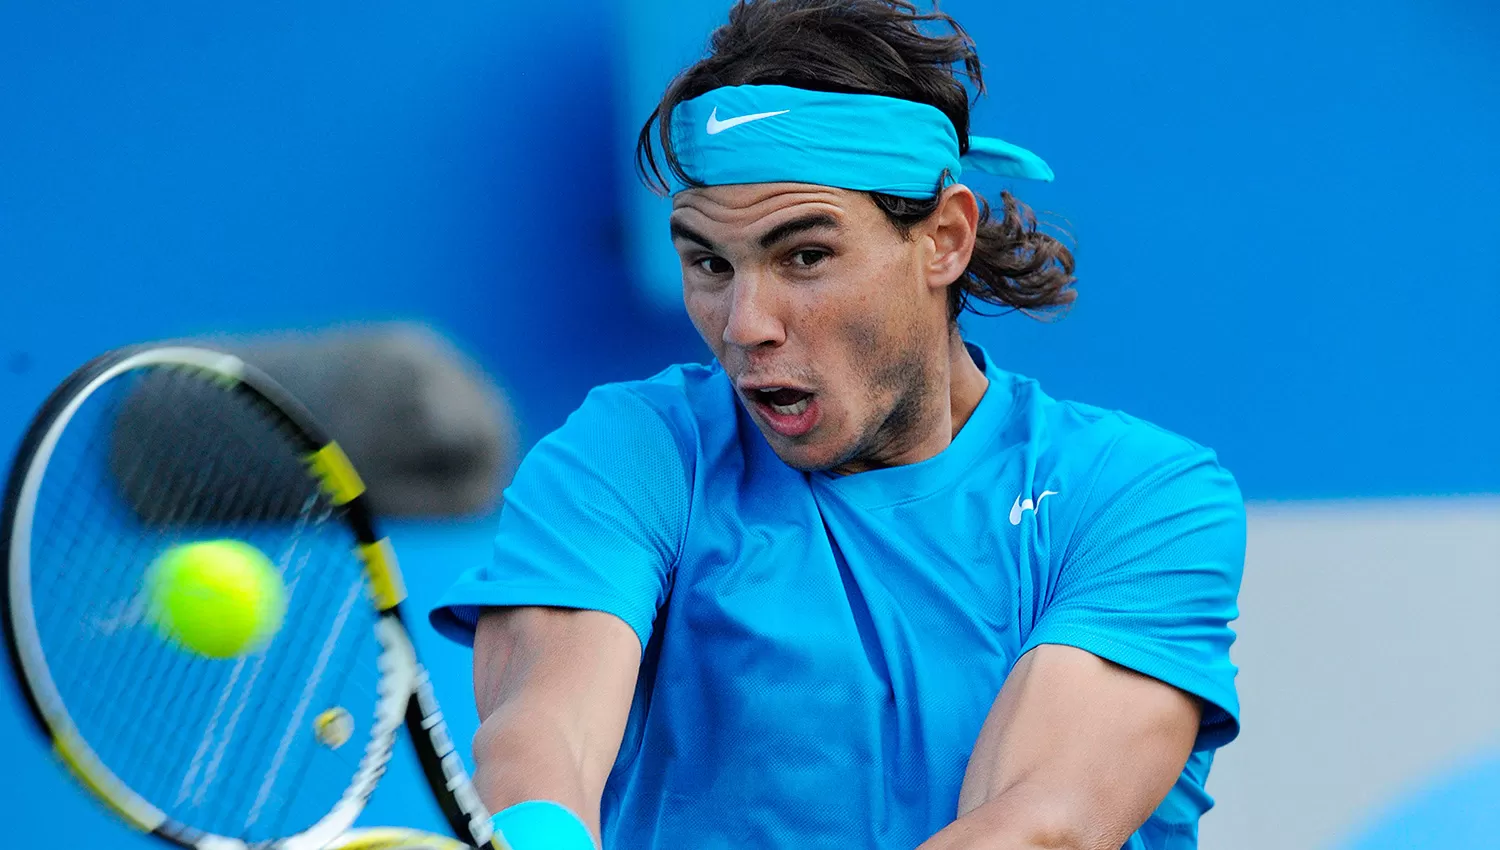 Rafael Nadal desplazará a Murray en el escalafón ATP.
ARCHIVO